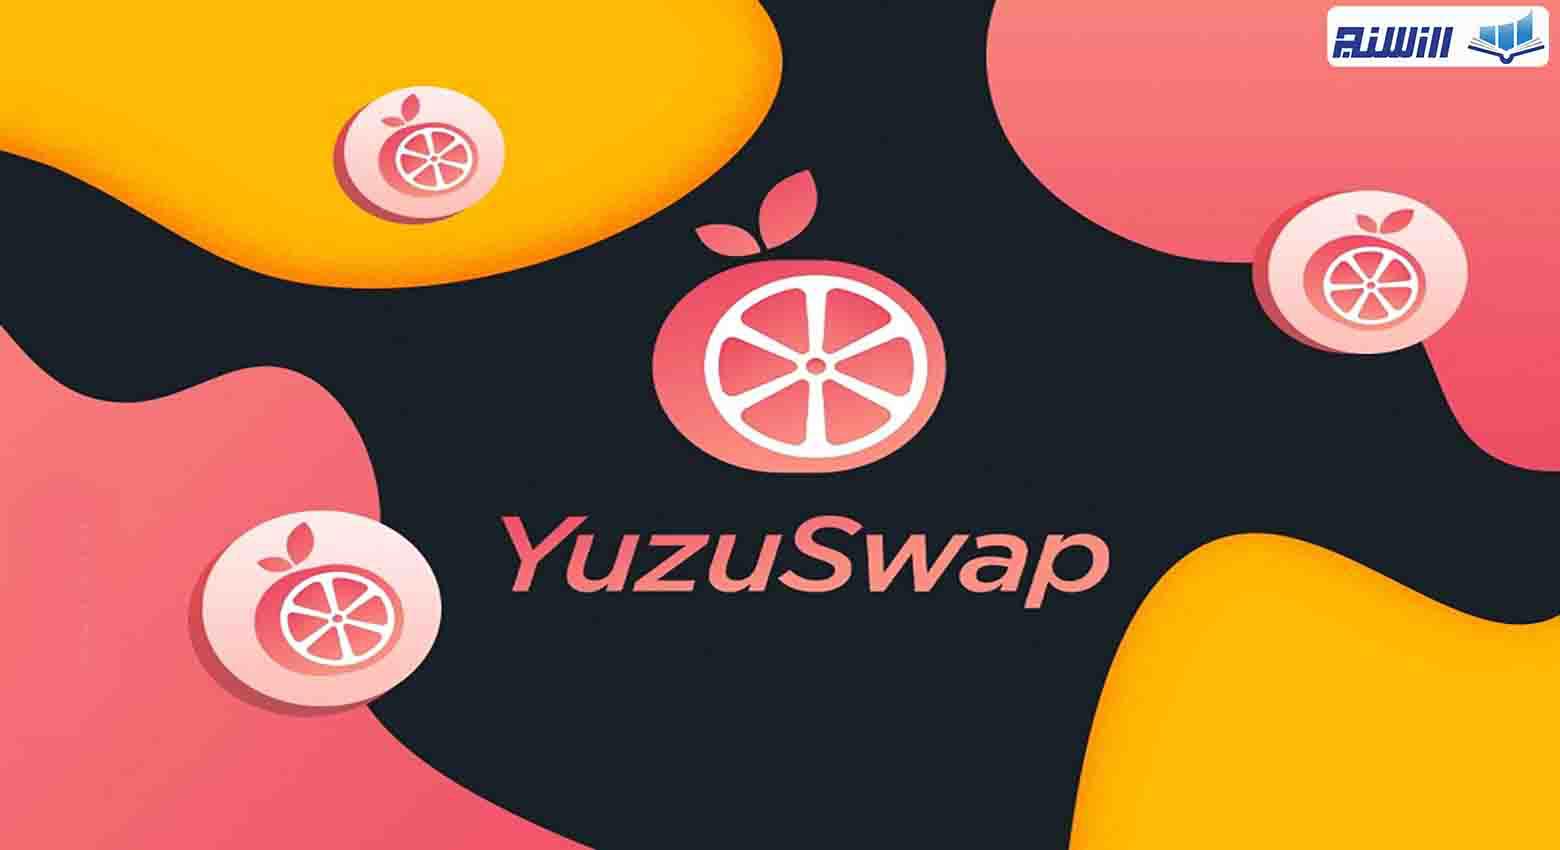 آموزش صرافی غیرمتمرکز یوزو سواپ YuzuSwap( نحوه کار با پلتفرم YuzuSwap)